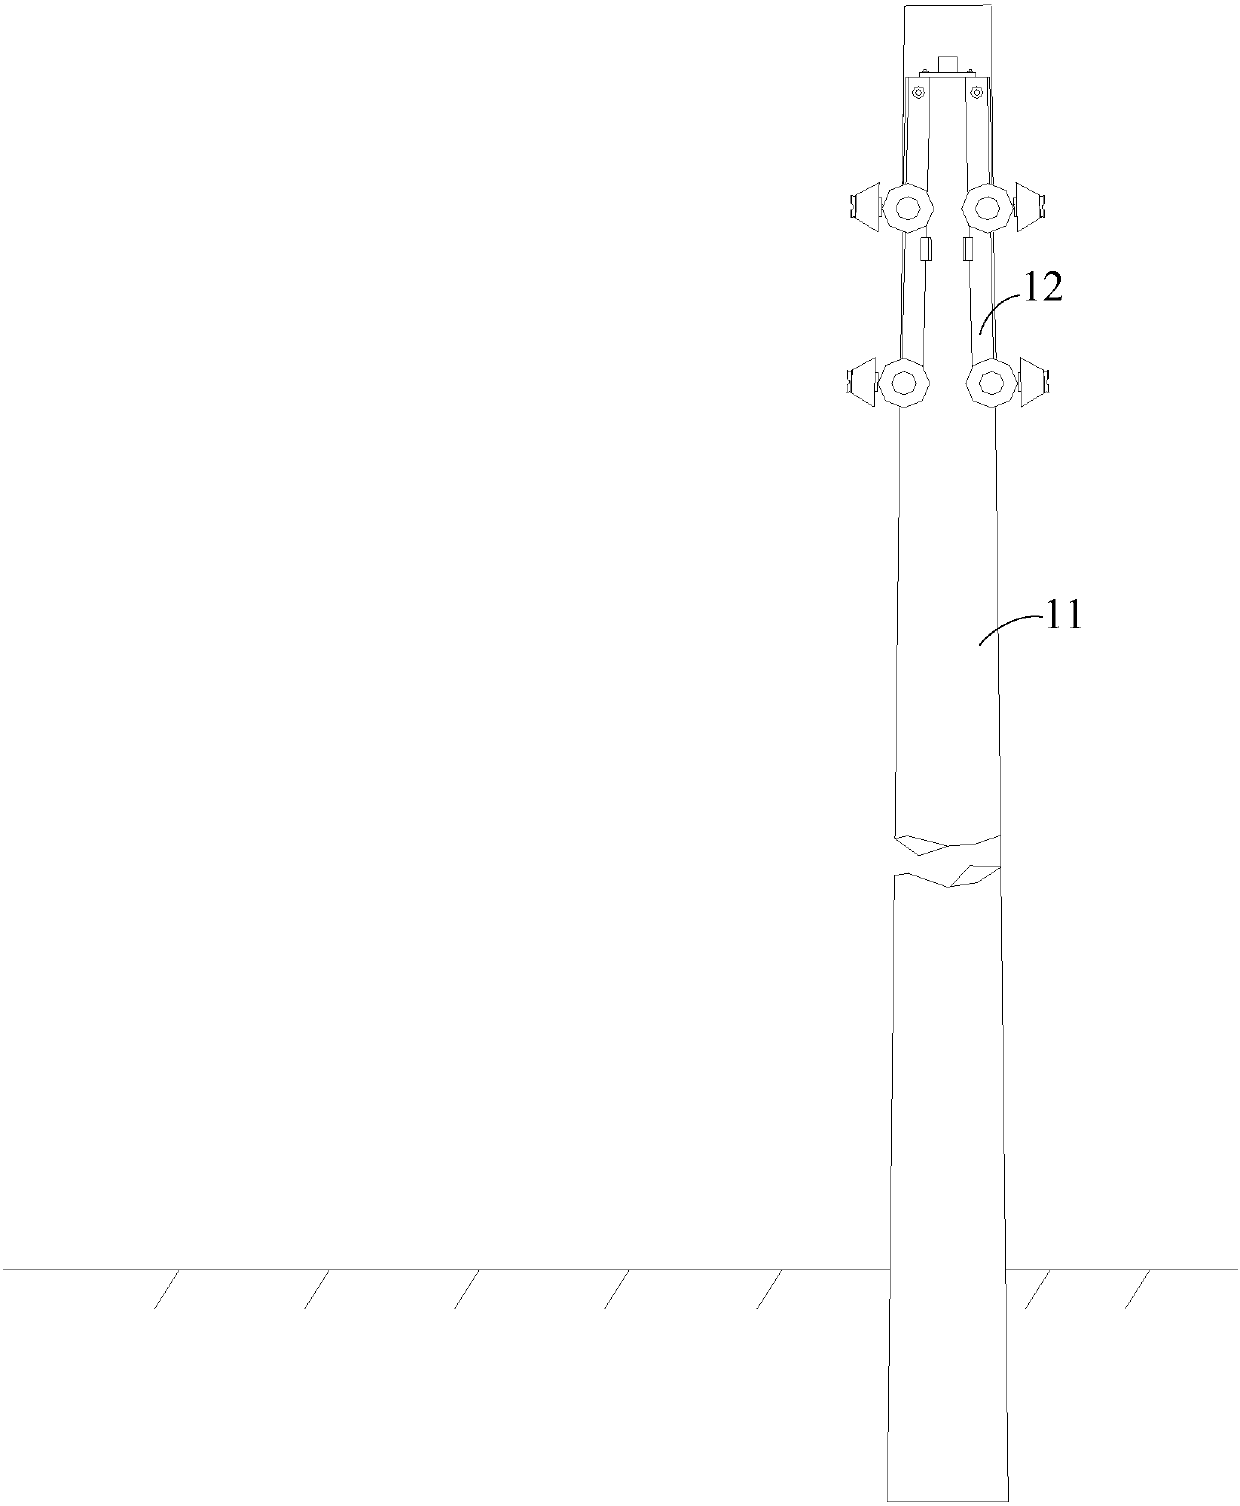 a wire pole